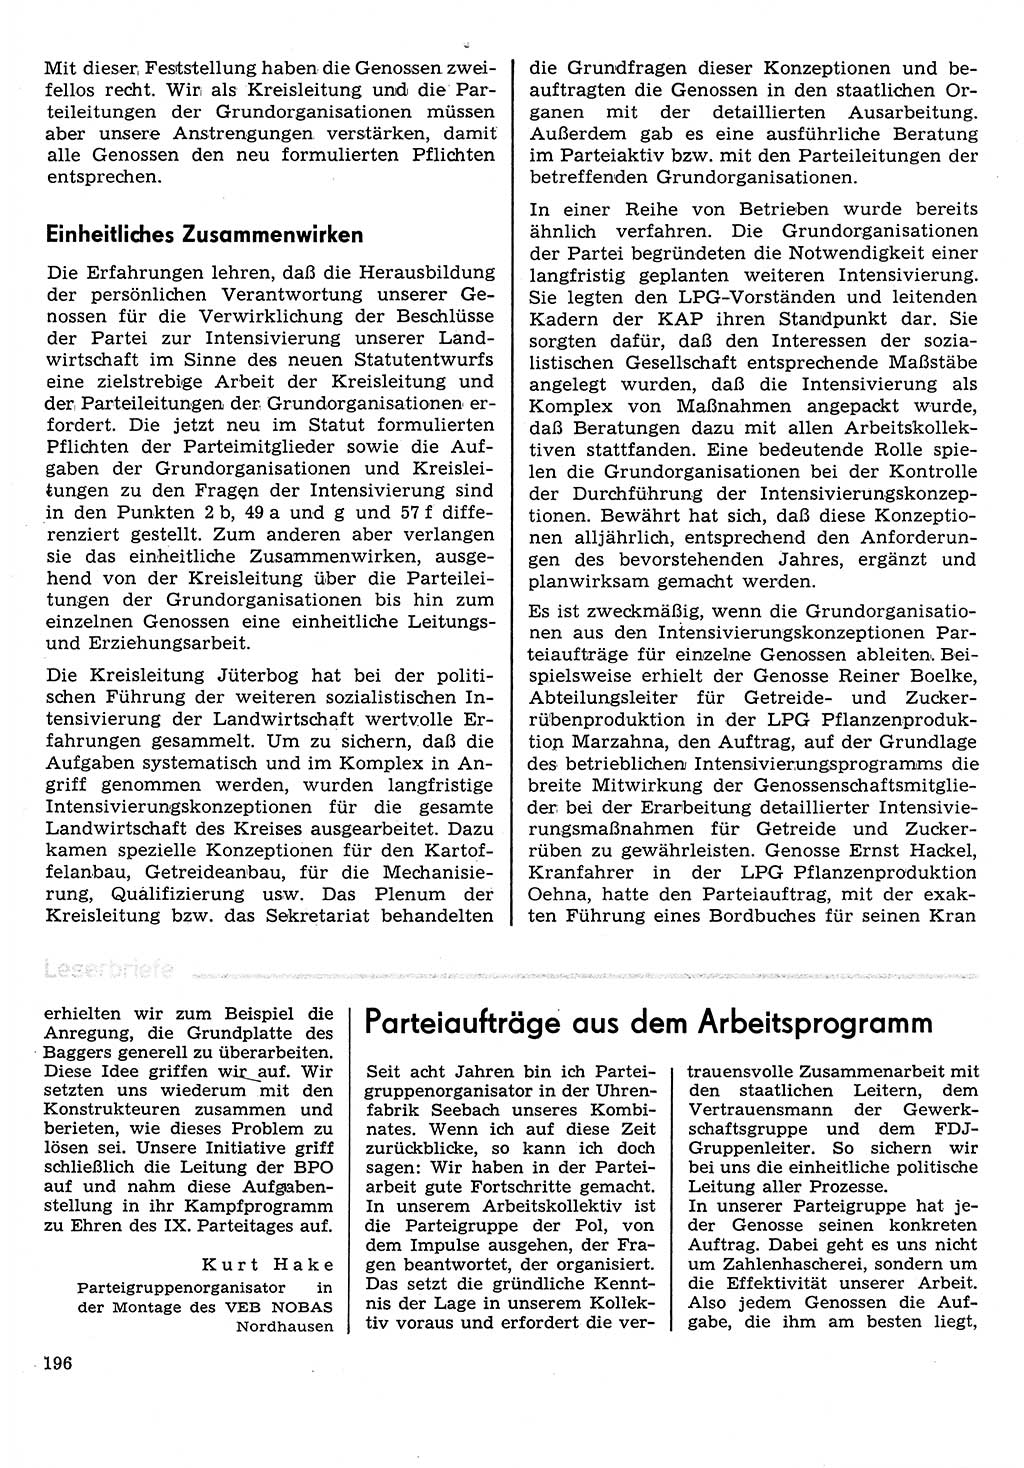 Neuer Weg (NW), Organ des Zentralkomitees (ZK) der SED (Sozialistische Einheitspartei Deutschlands) für Fragen des Parteilebens, 31. Jahrgang [Deutsche Demokratische Republik (DDR)] 1976, Seite 196 (NW ZK SED DDR 1976, S. 196)